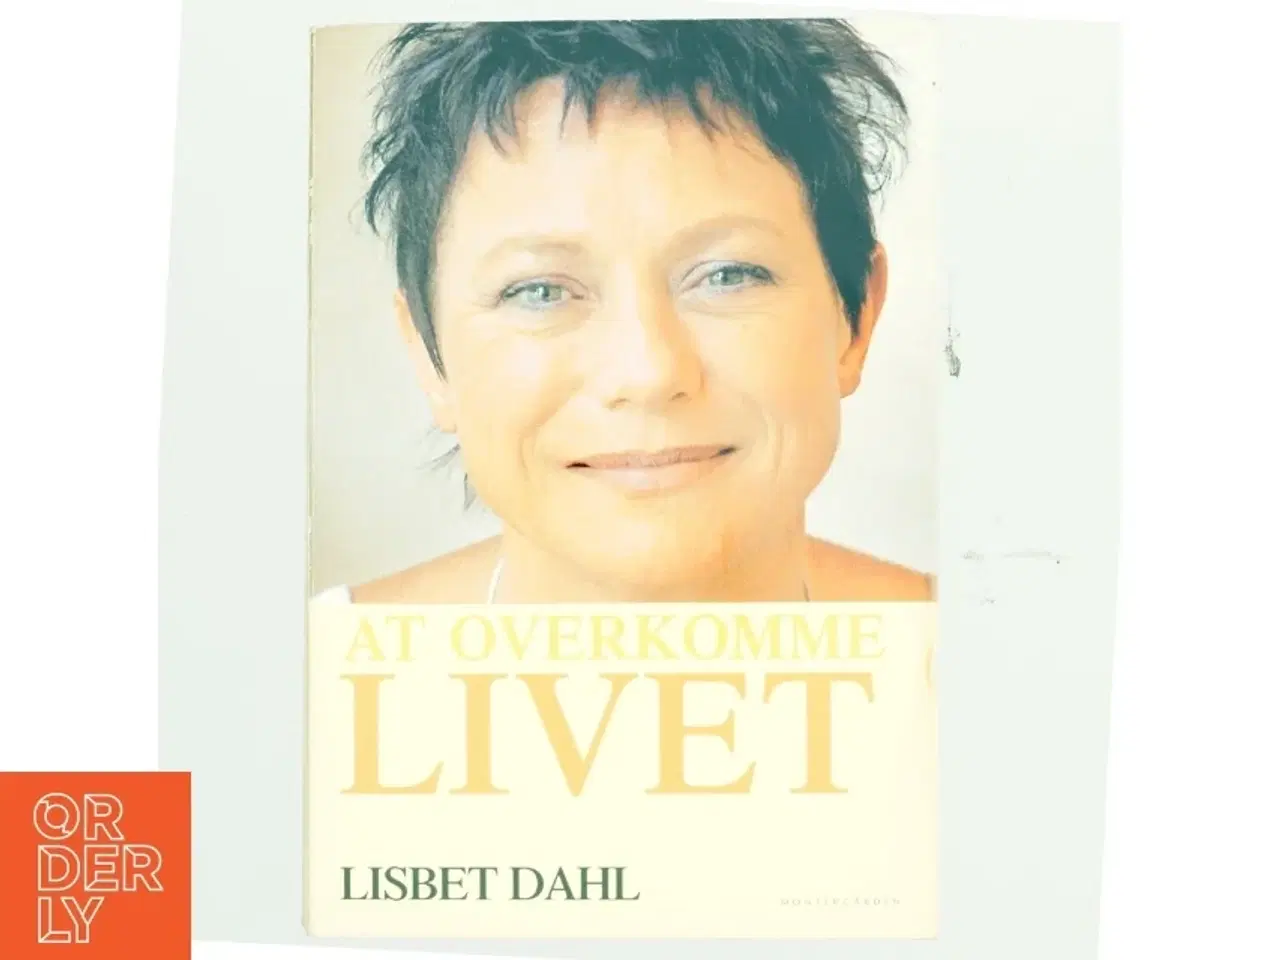 Billede 1 - At overkomme livet af Lisbet Dahl (Bog)